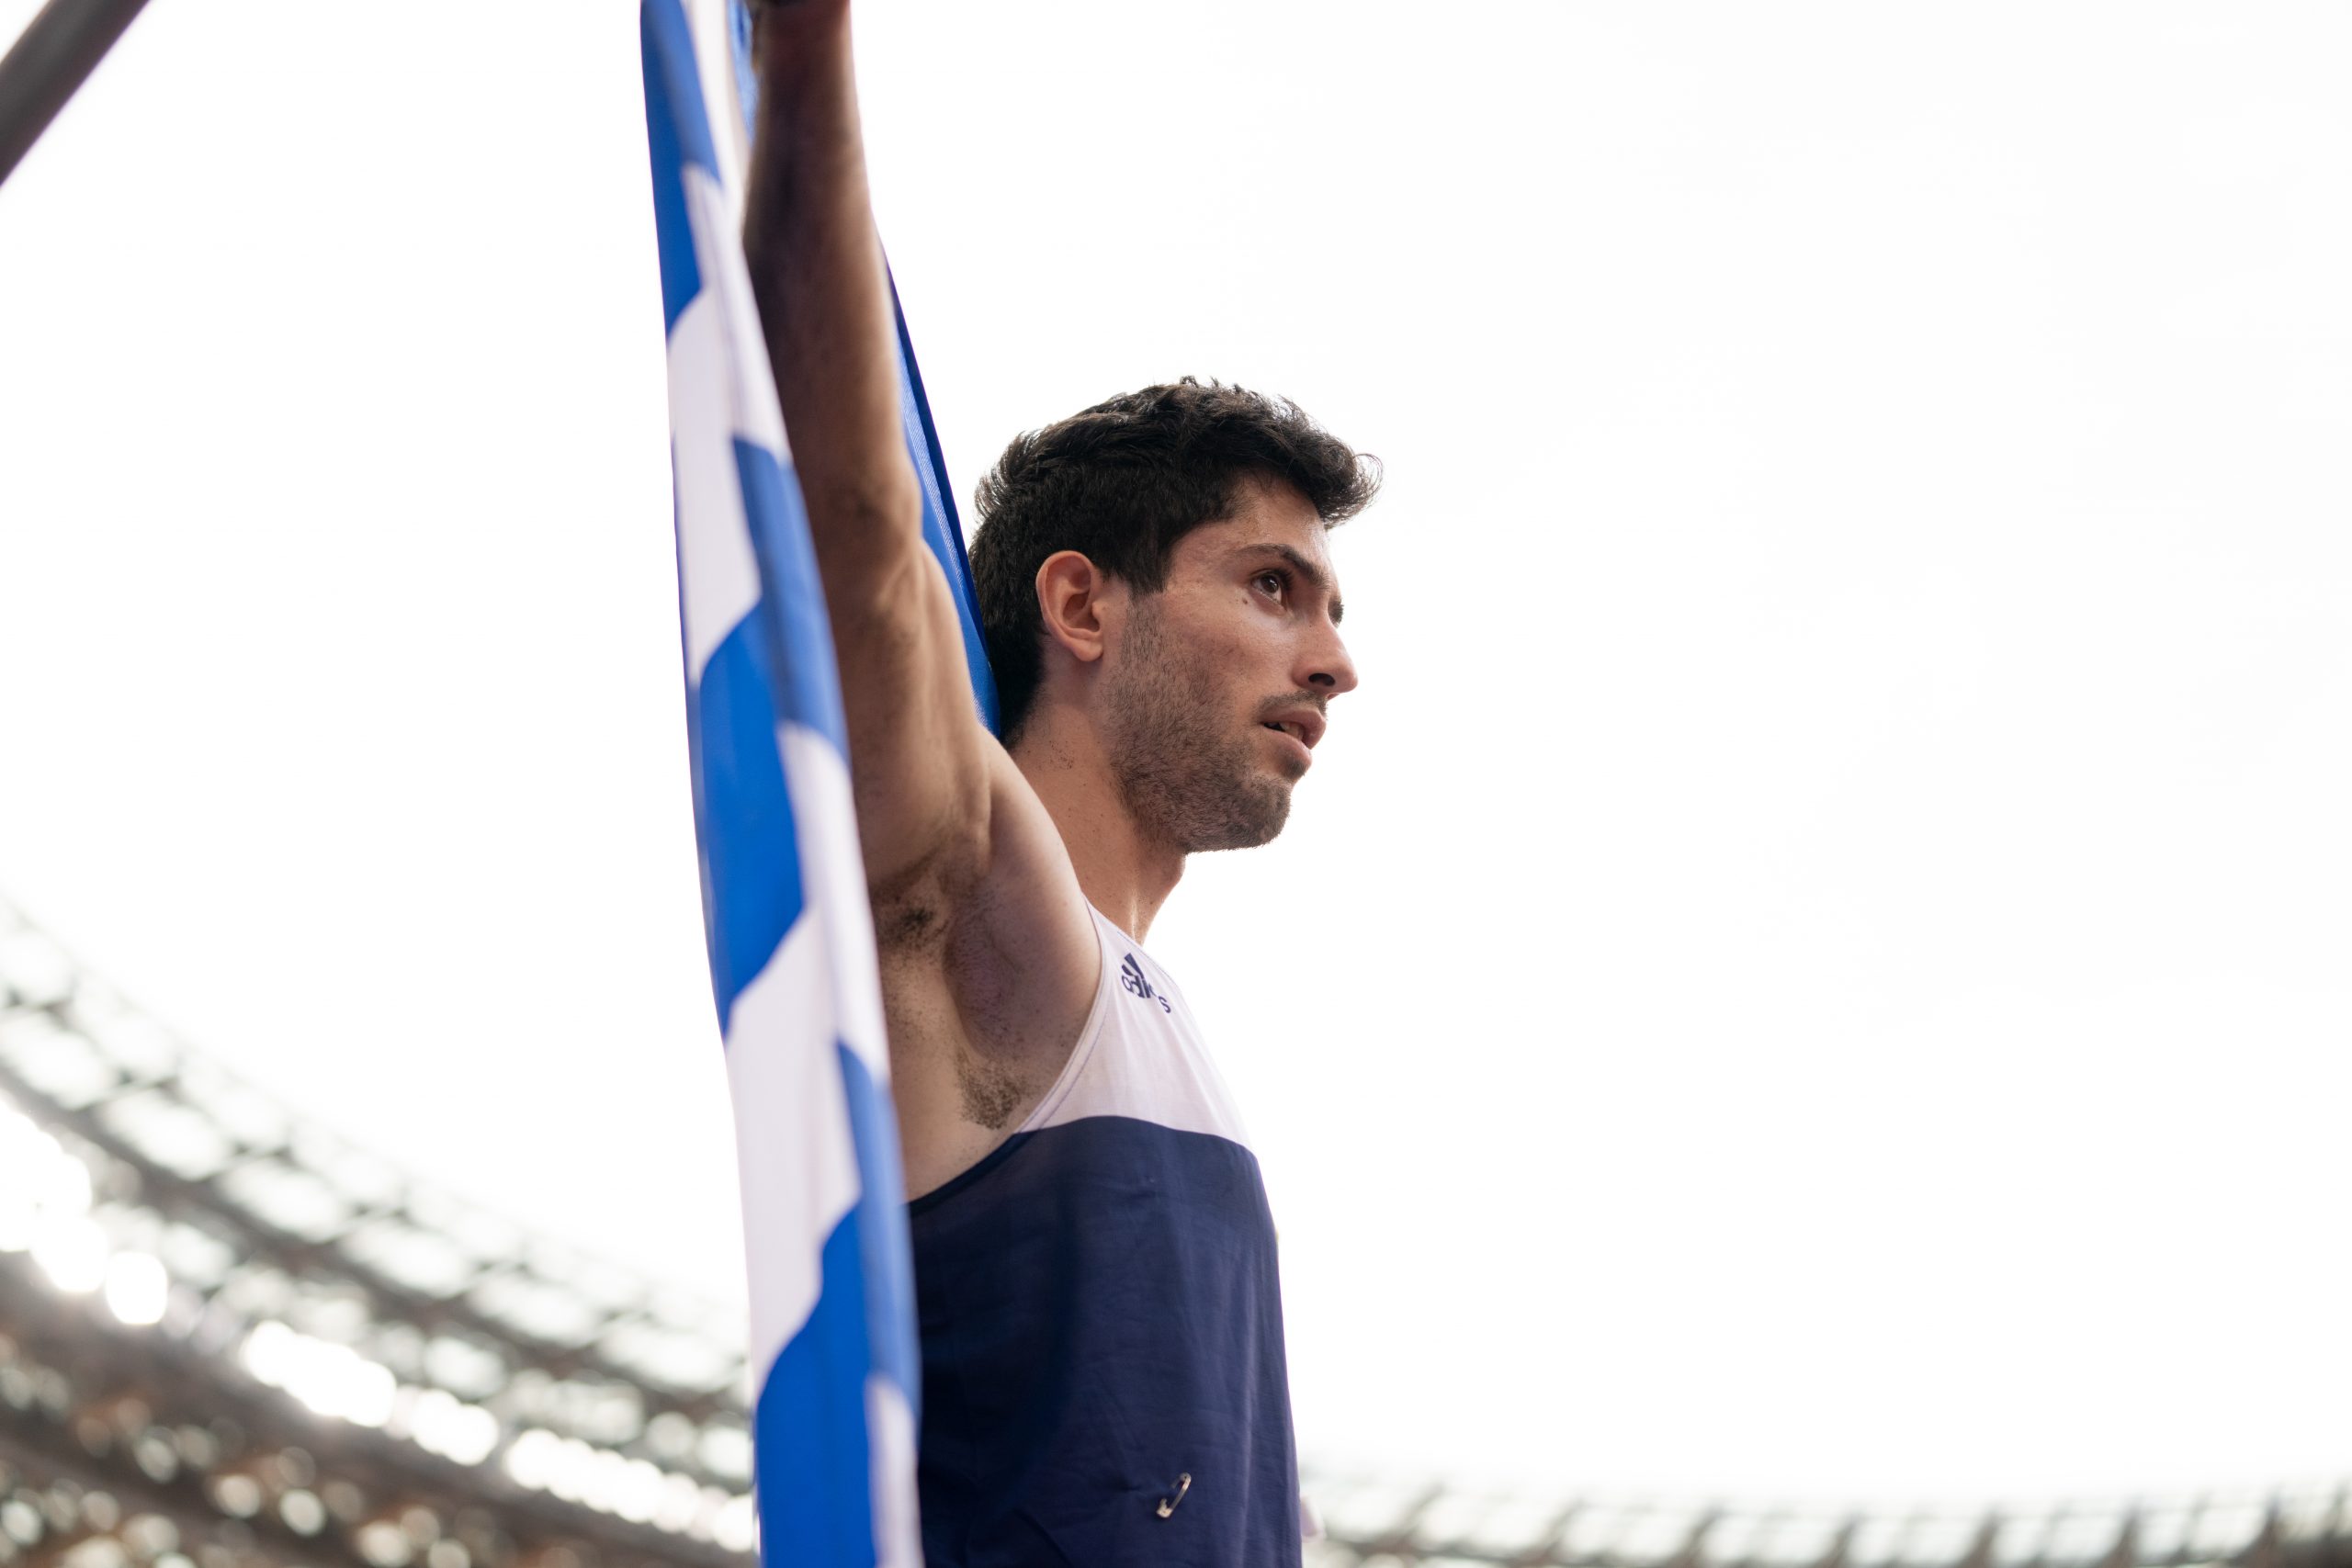 Μίλτος Τεντόγλου: Ιστορικό ένατο χρυσό μετάλλιο της Ελλάδας στον στίβο!